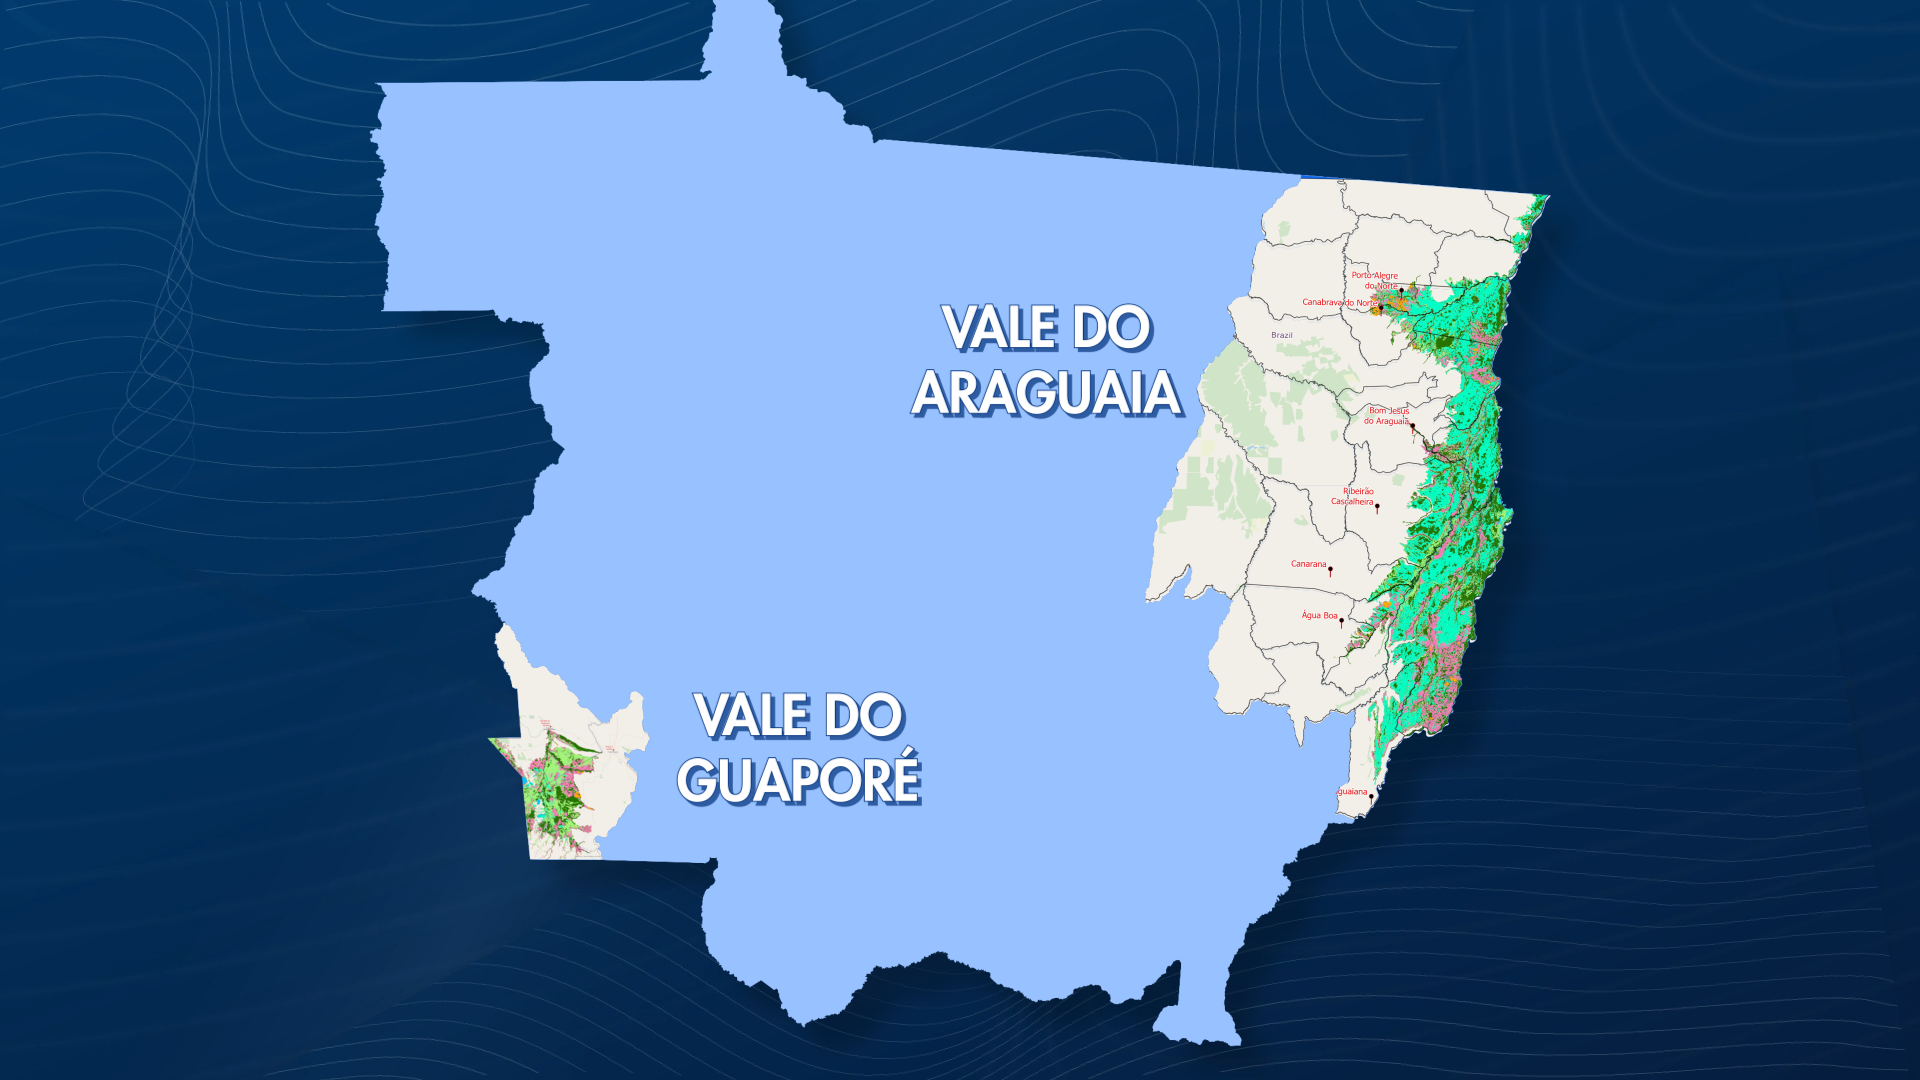 mapa do vale do araguaia e guaporé